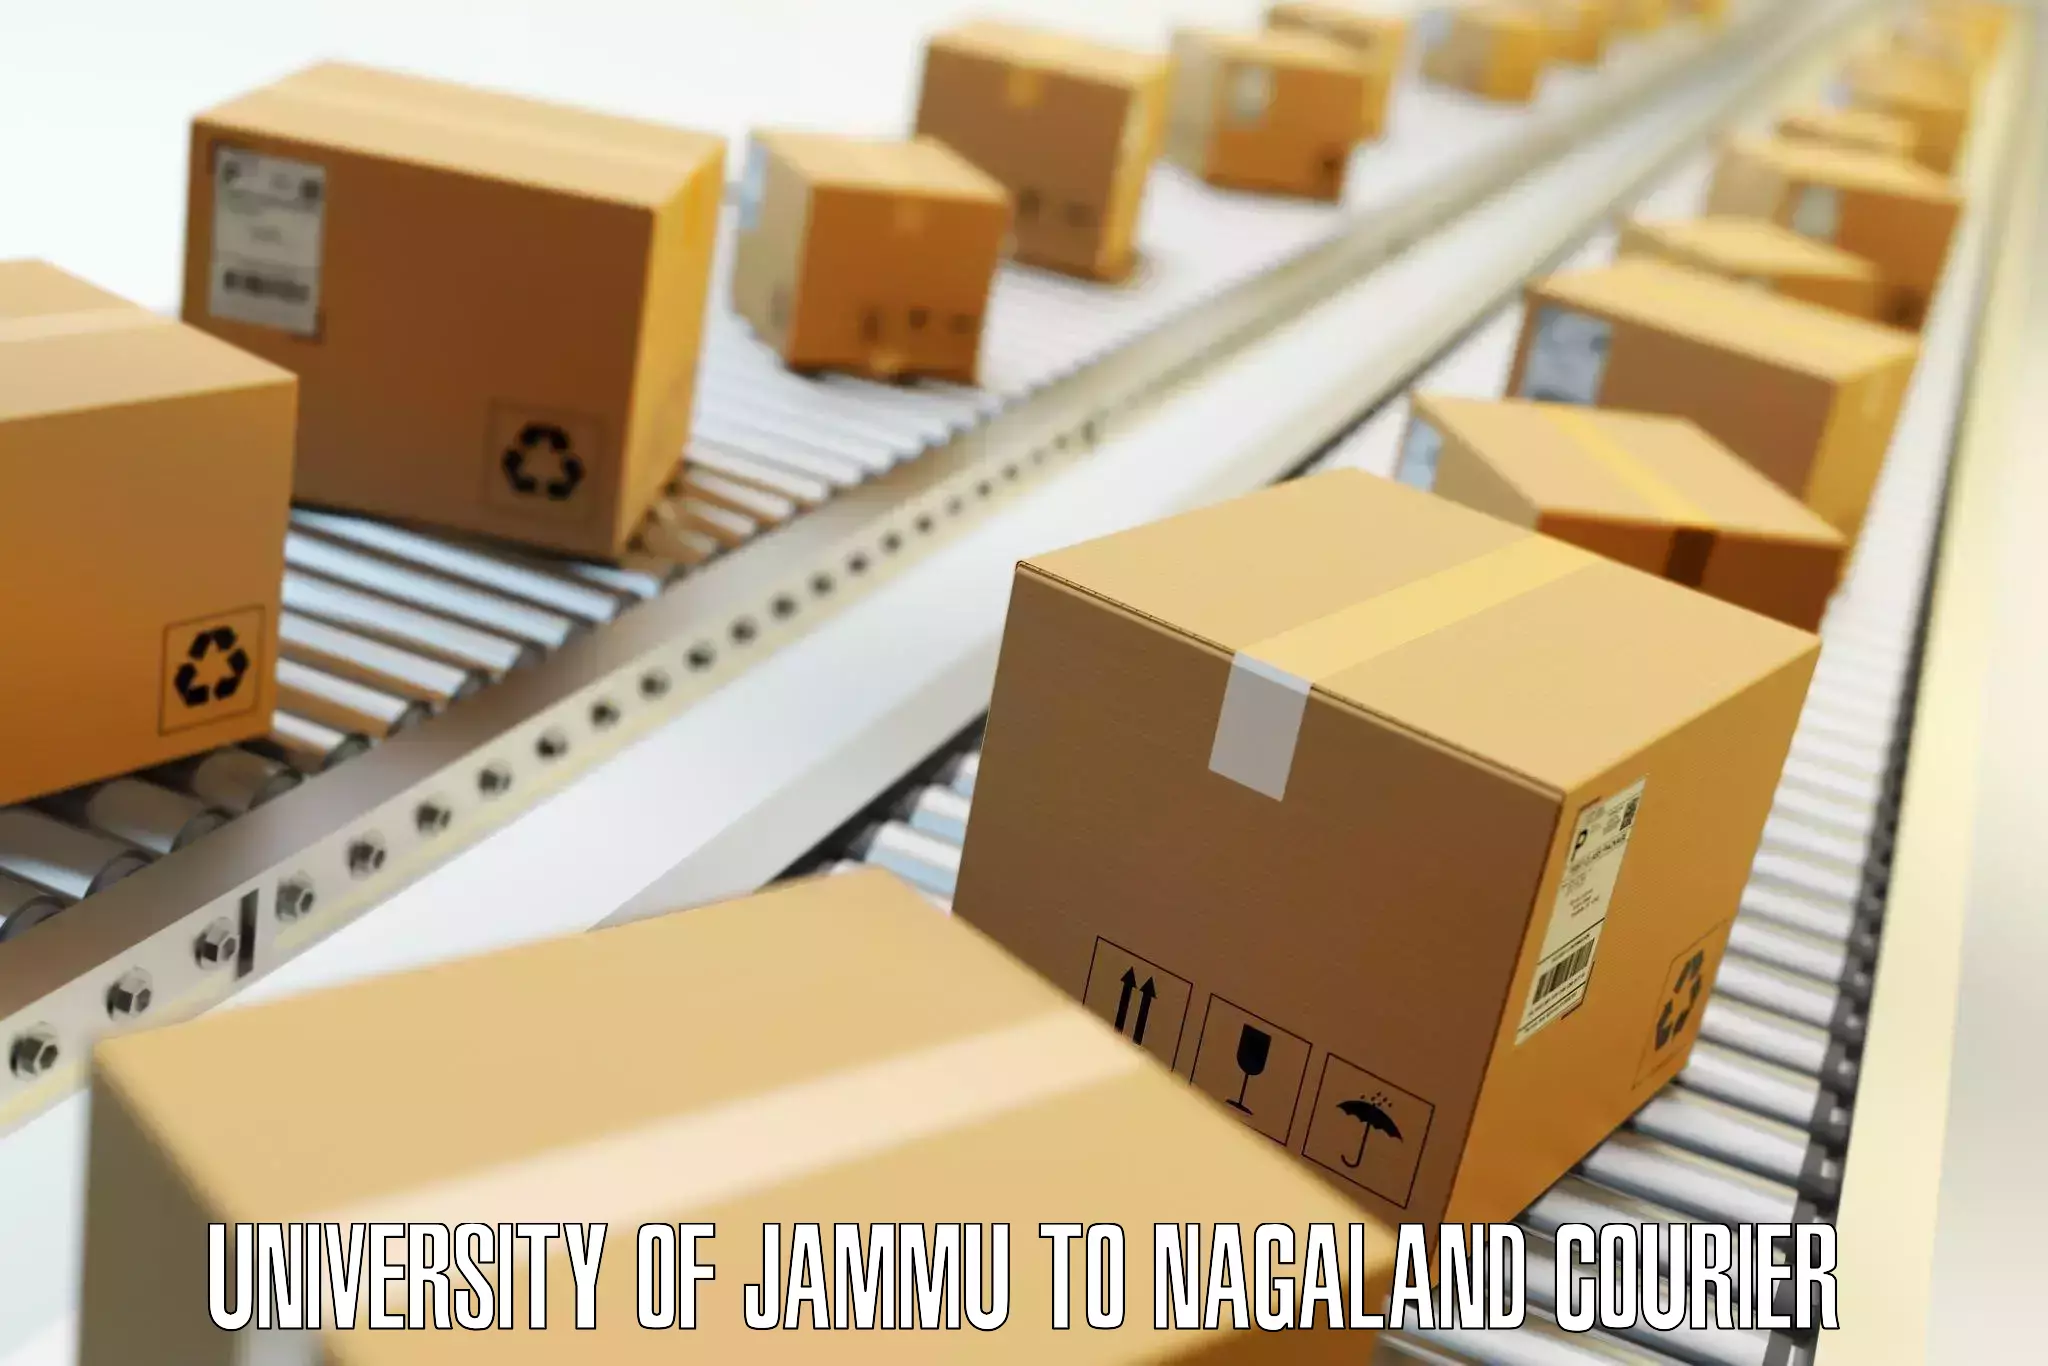 Luggage transport guidelines University of Jammu to Nagaland